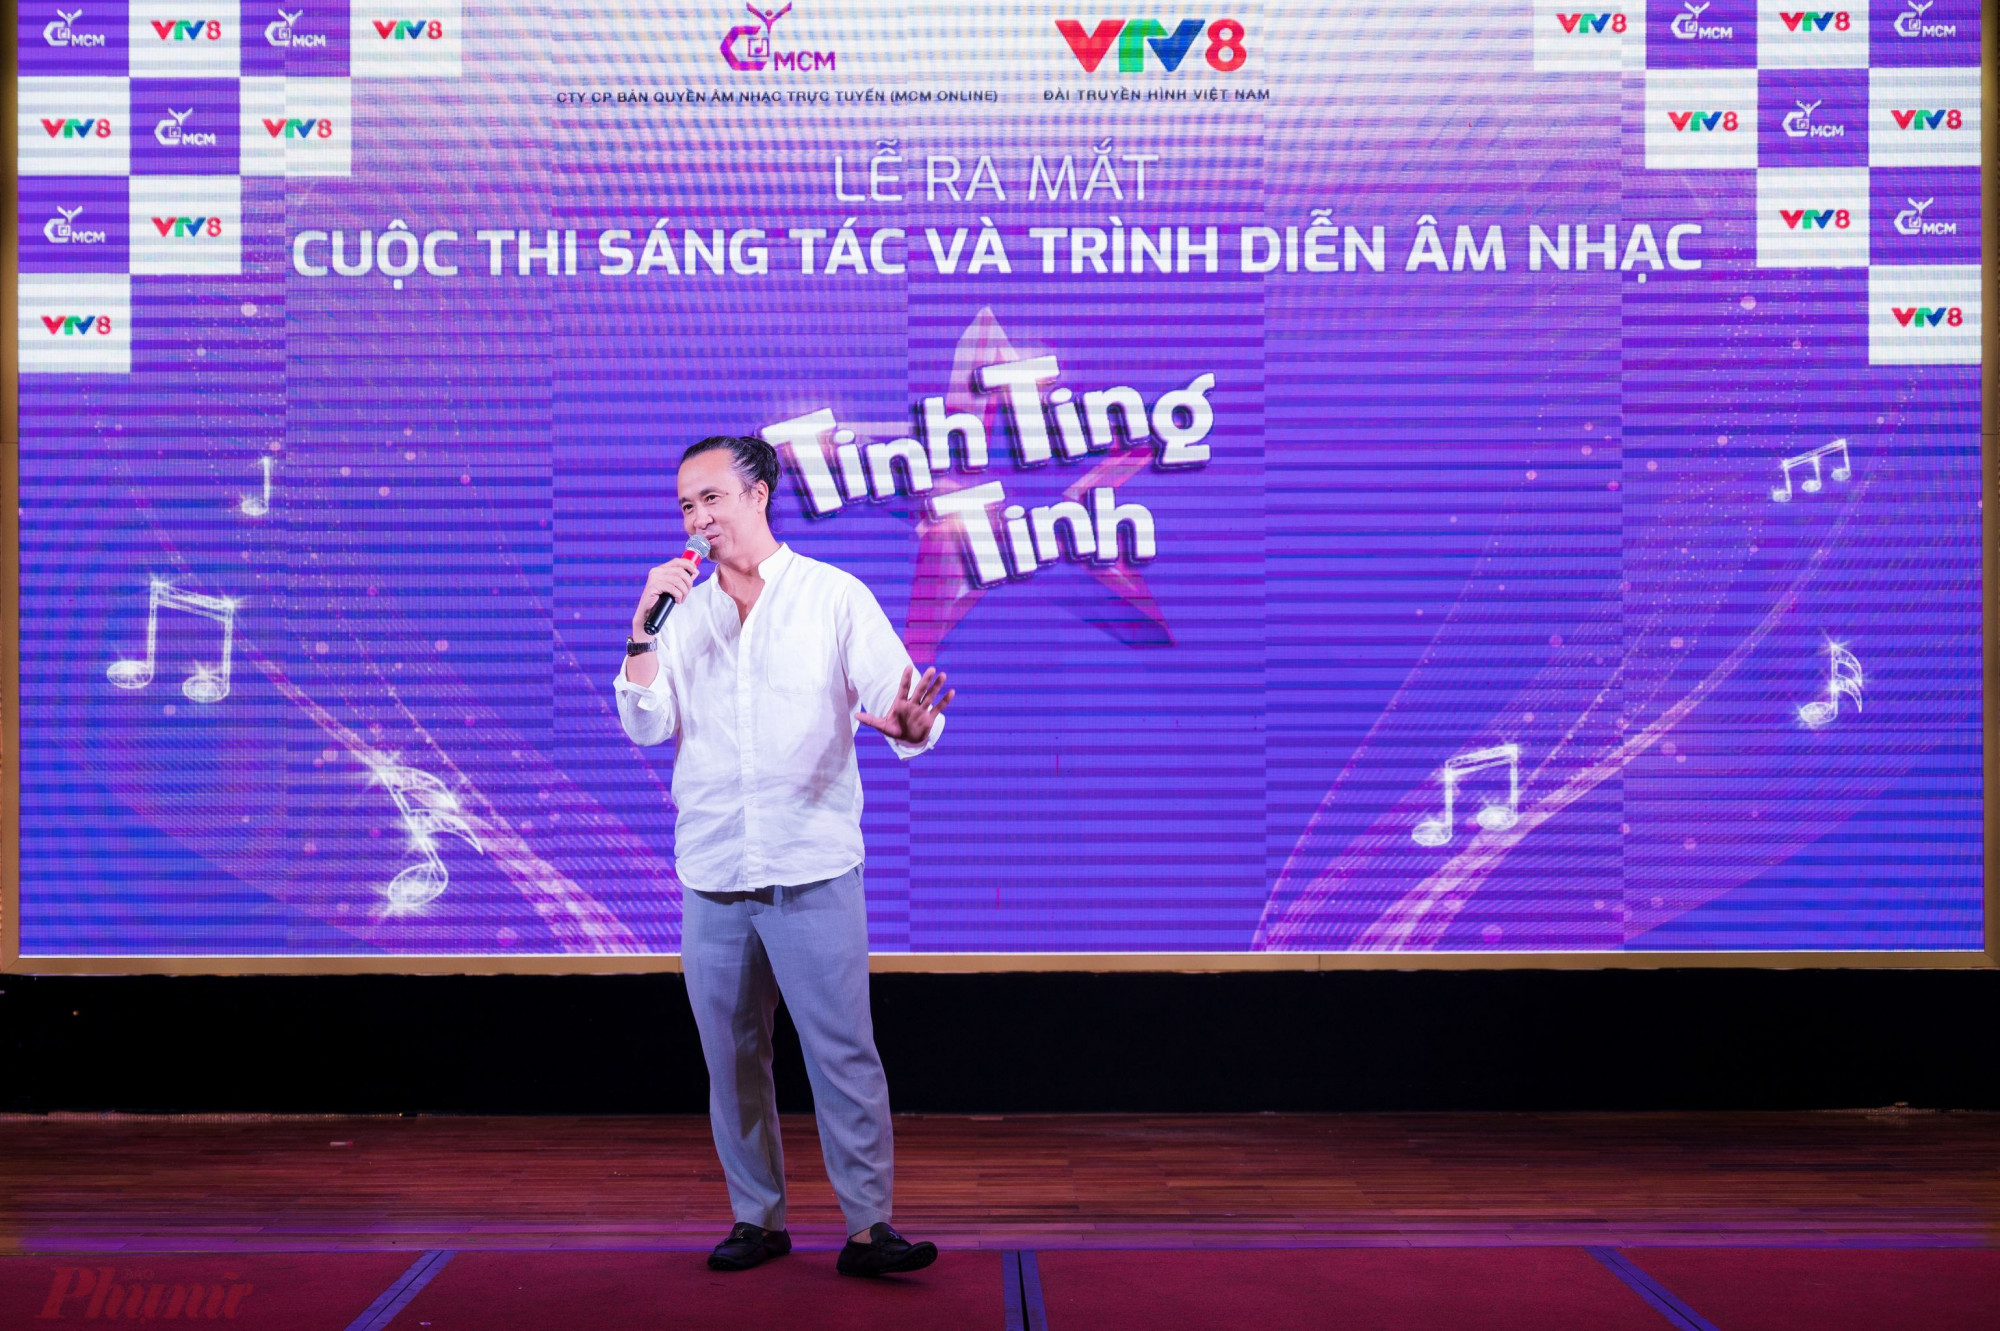 Nhạc sĩ Lê Minh Sơn giới thiệu về cuộc thi tại buổi họp báo.